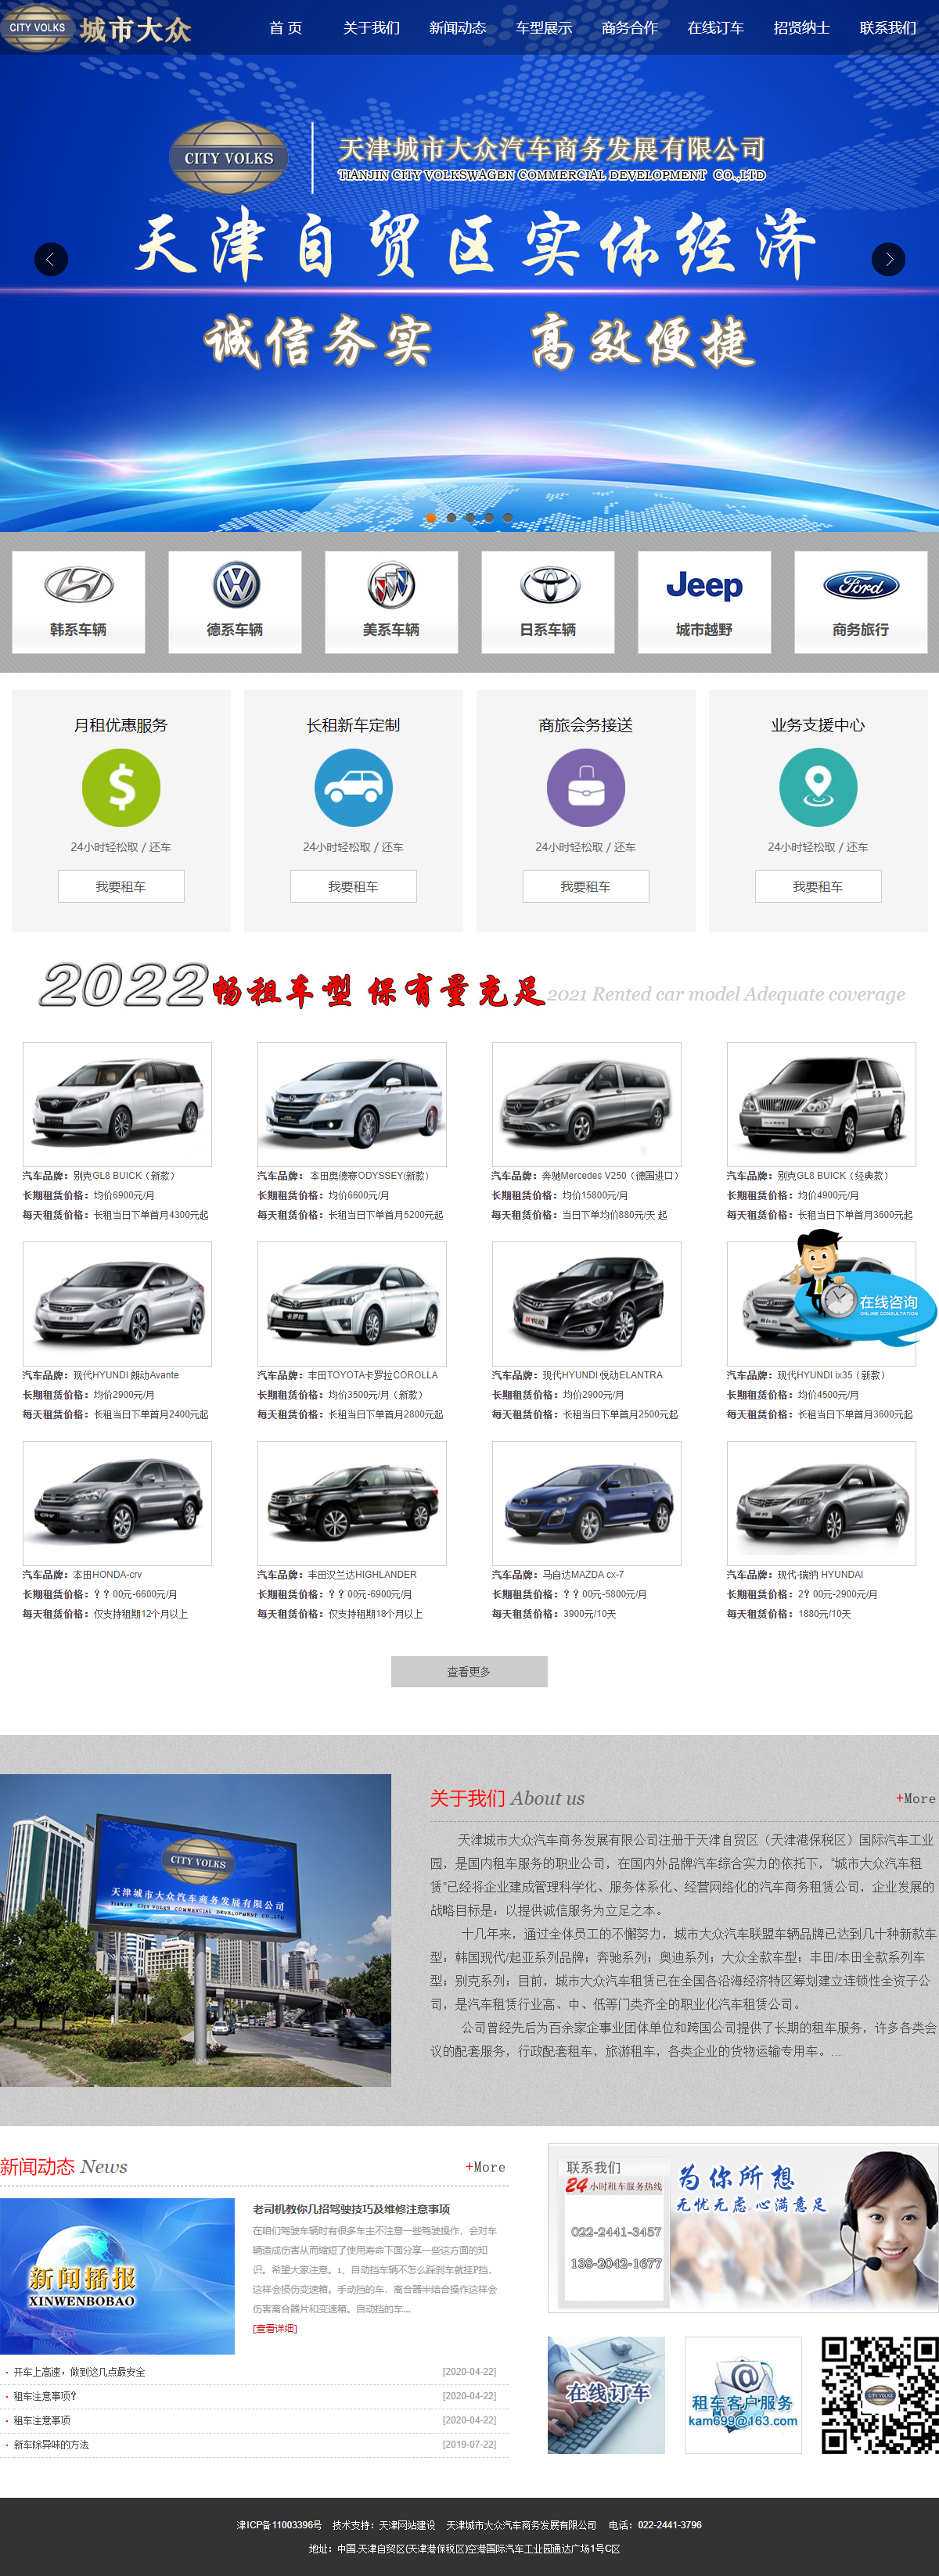 天津城市大众汽车商务发展有限公司网站案例